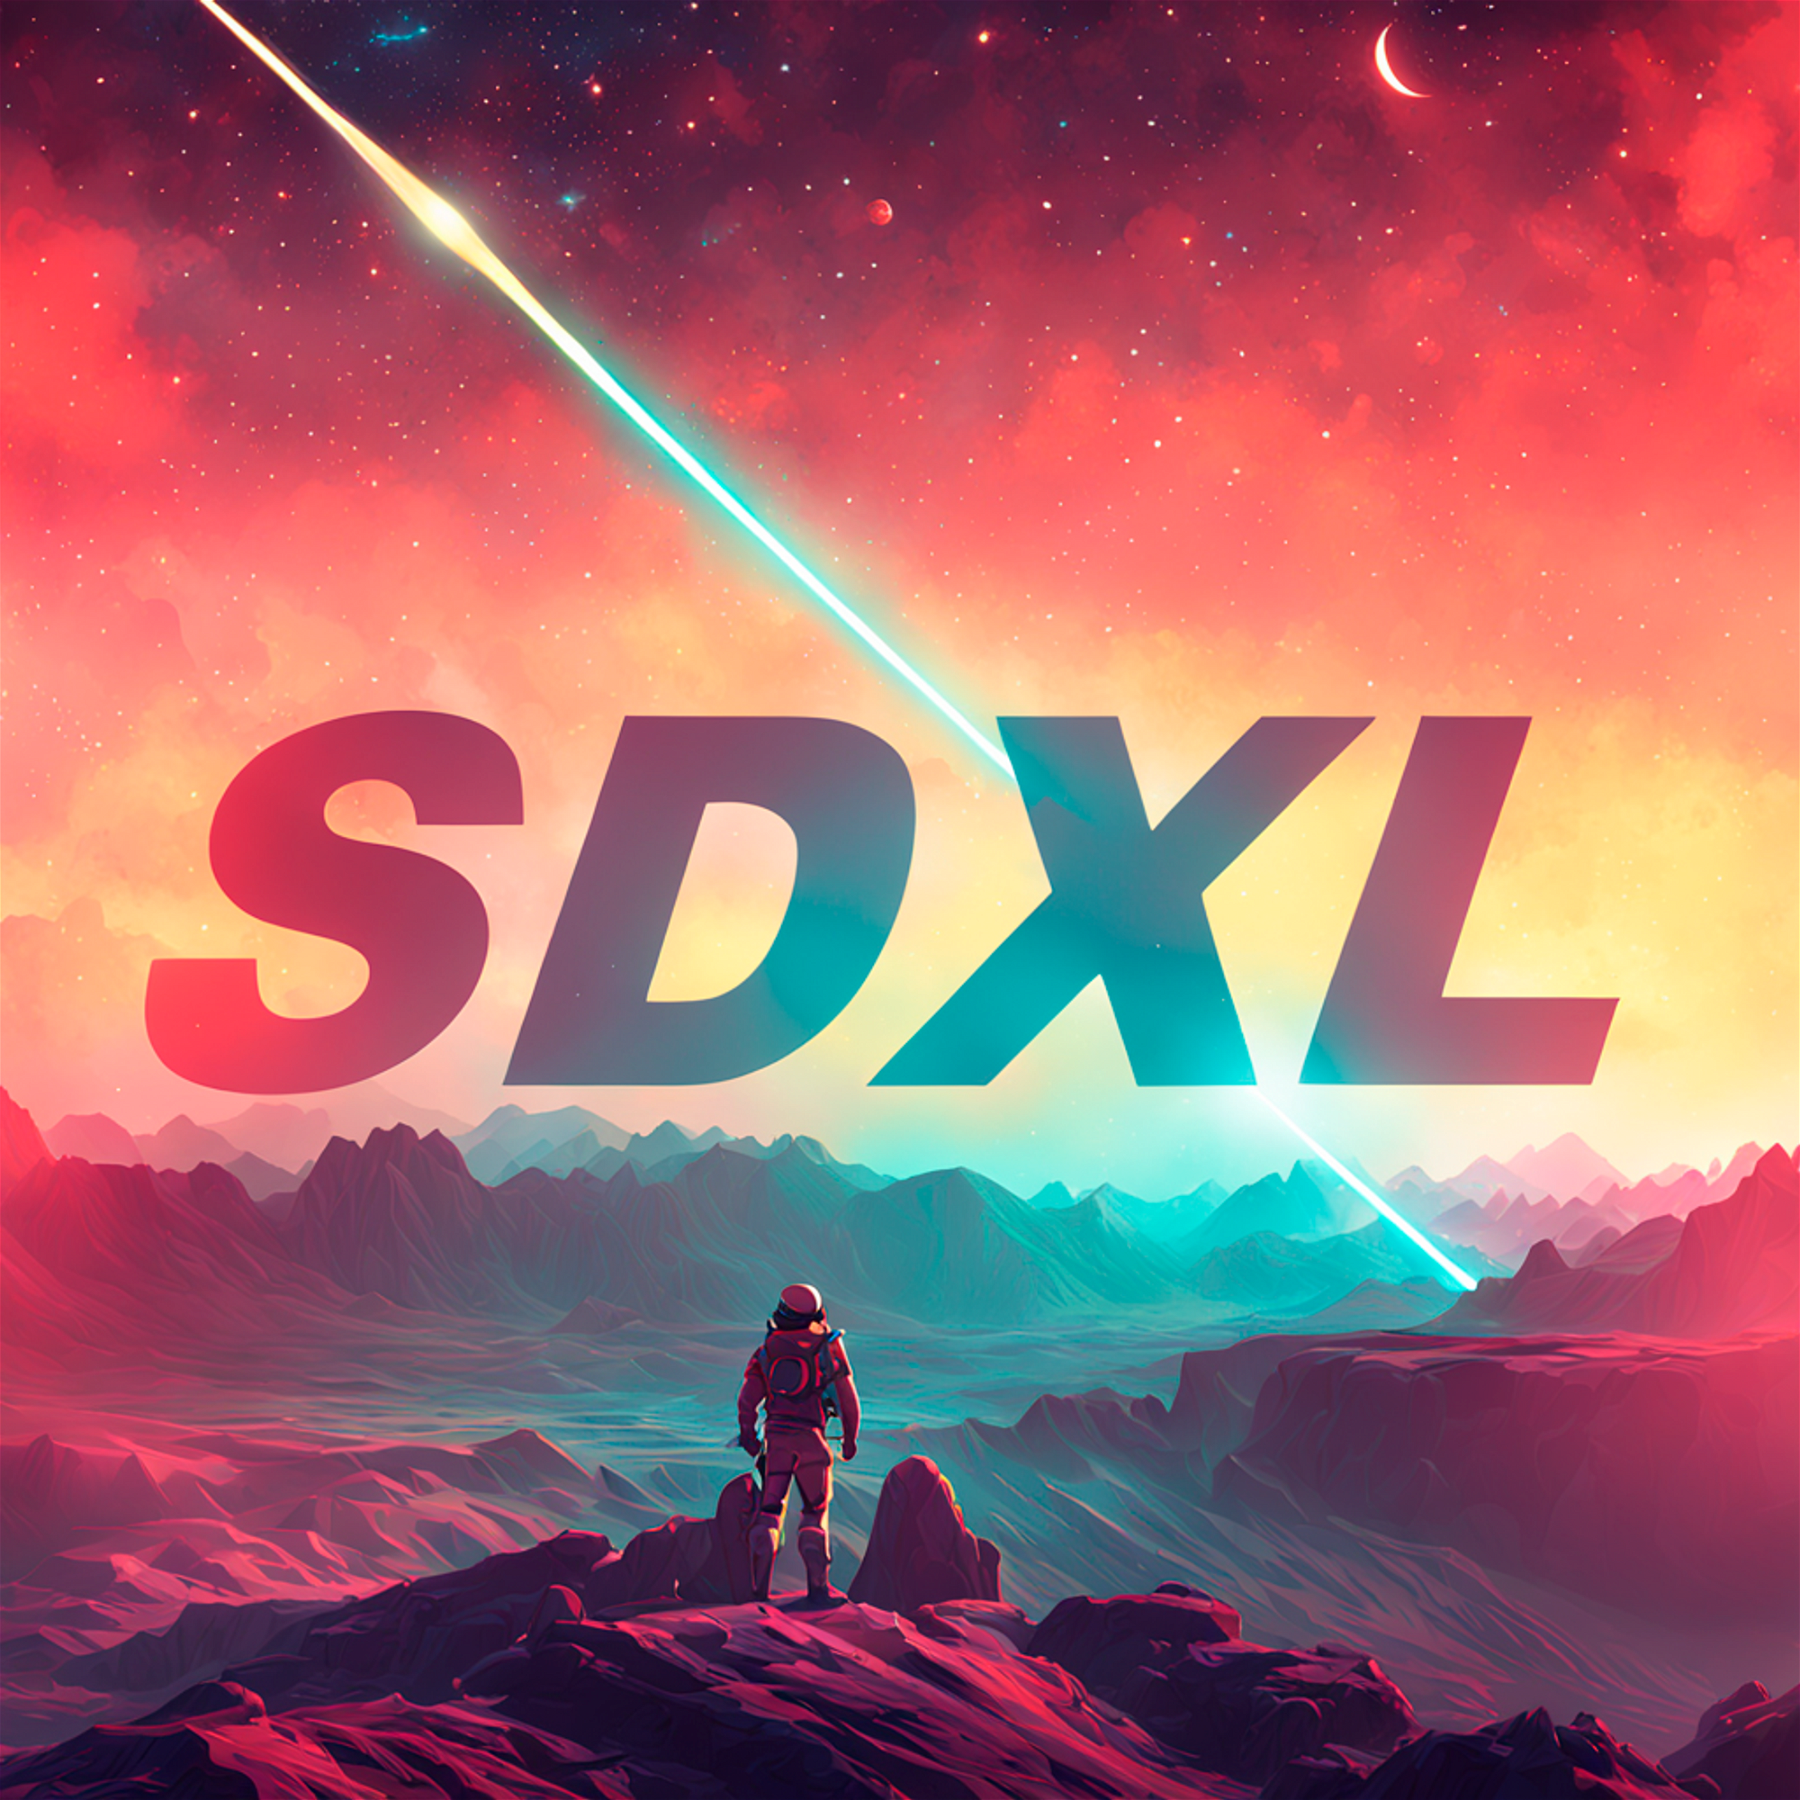 SDXL